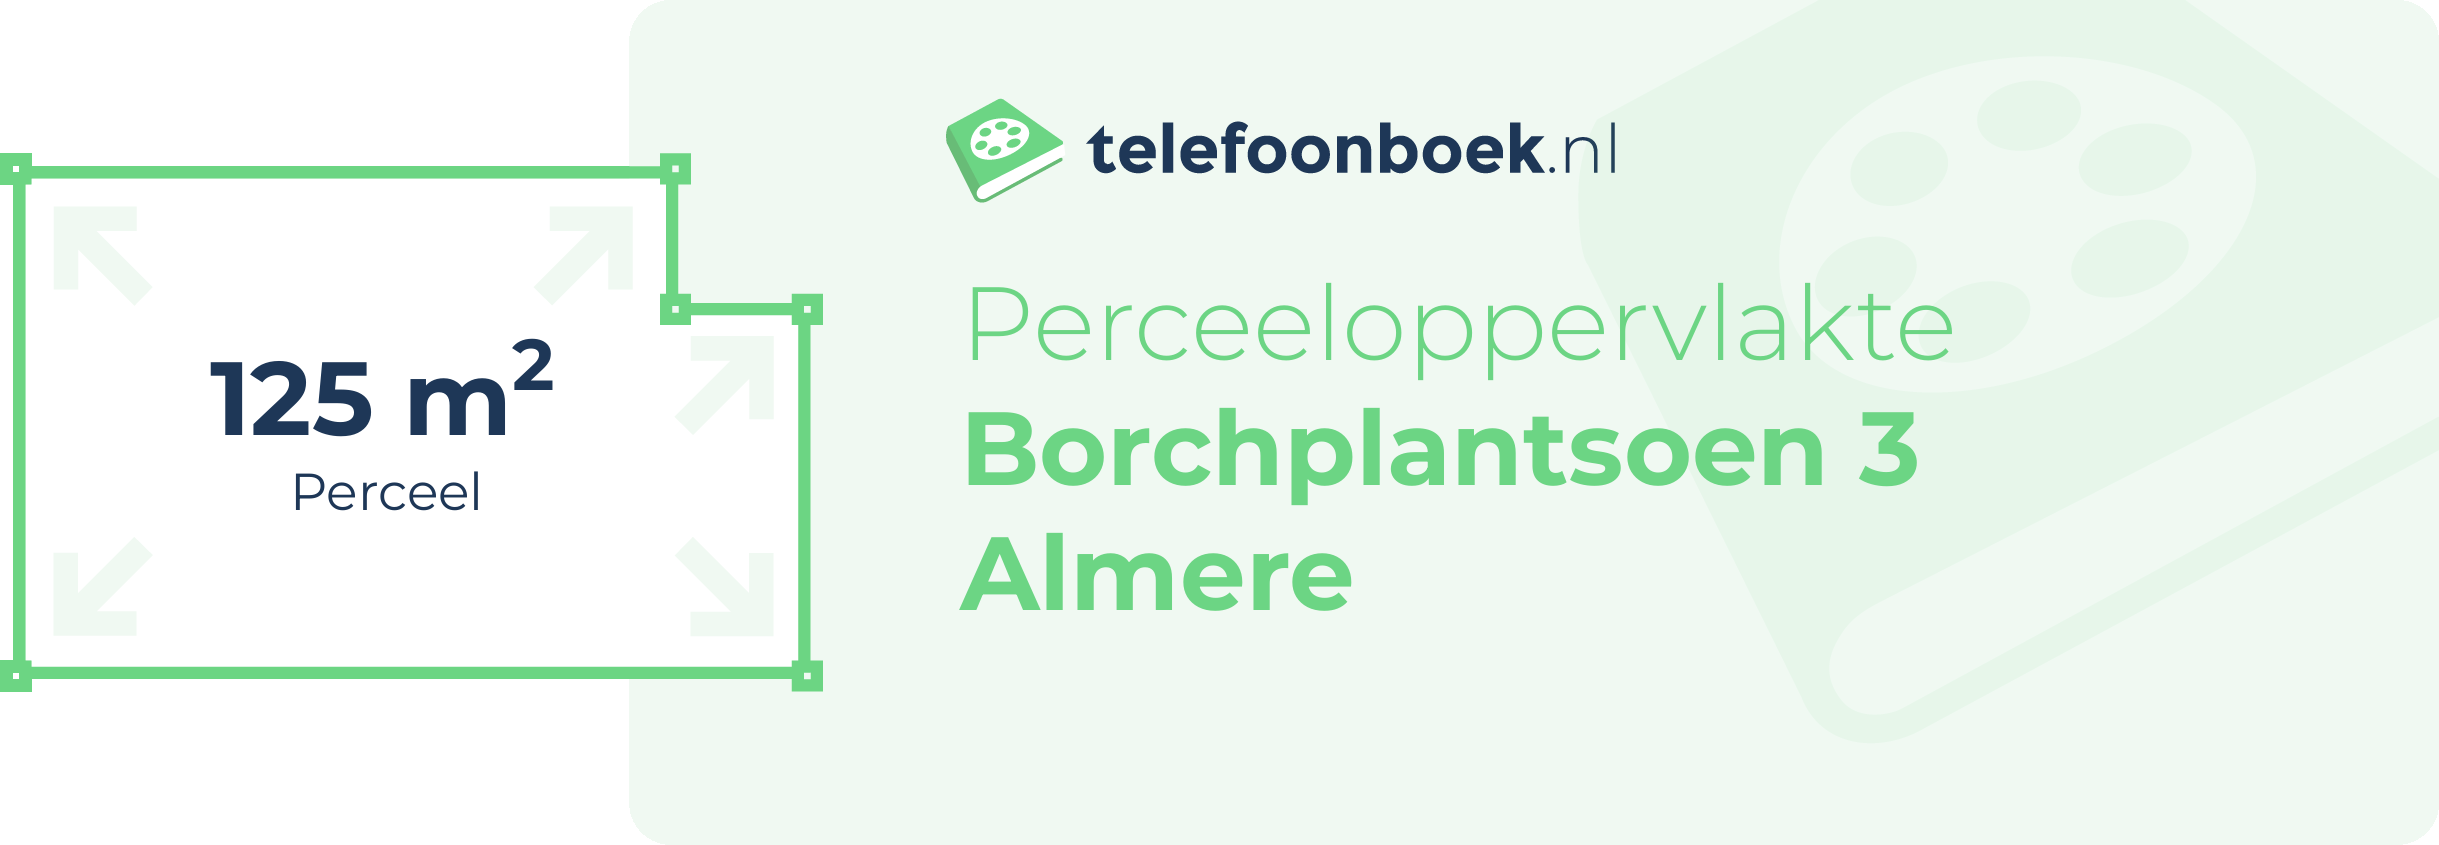 Perceeloppervlakte Borchplantsoen 3 Almere